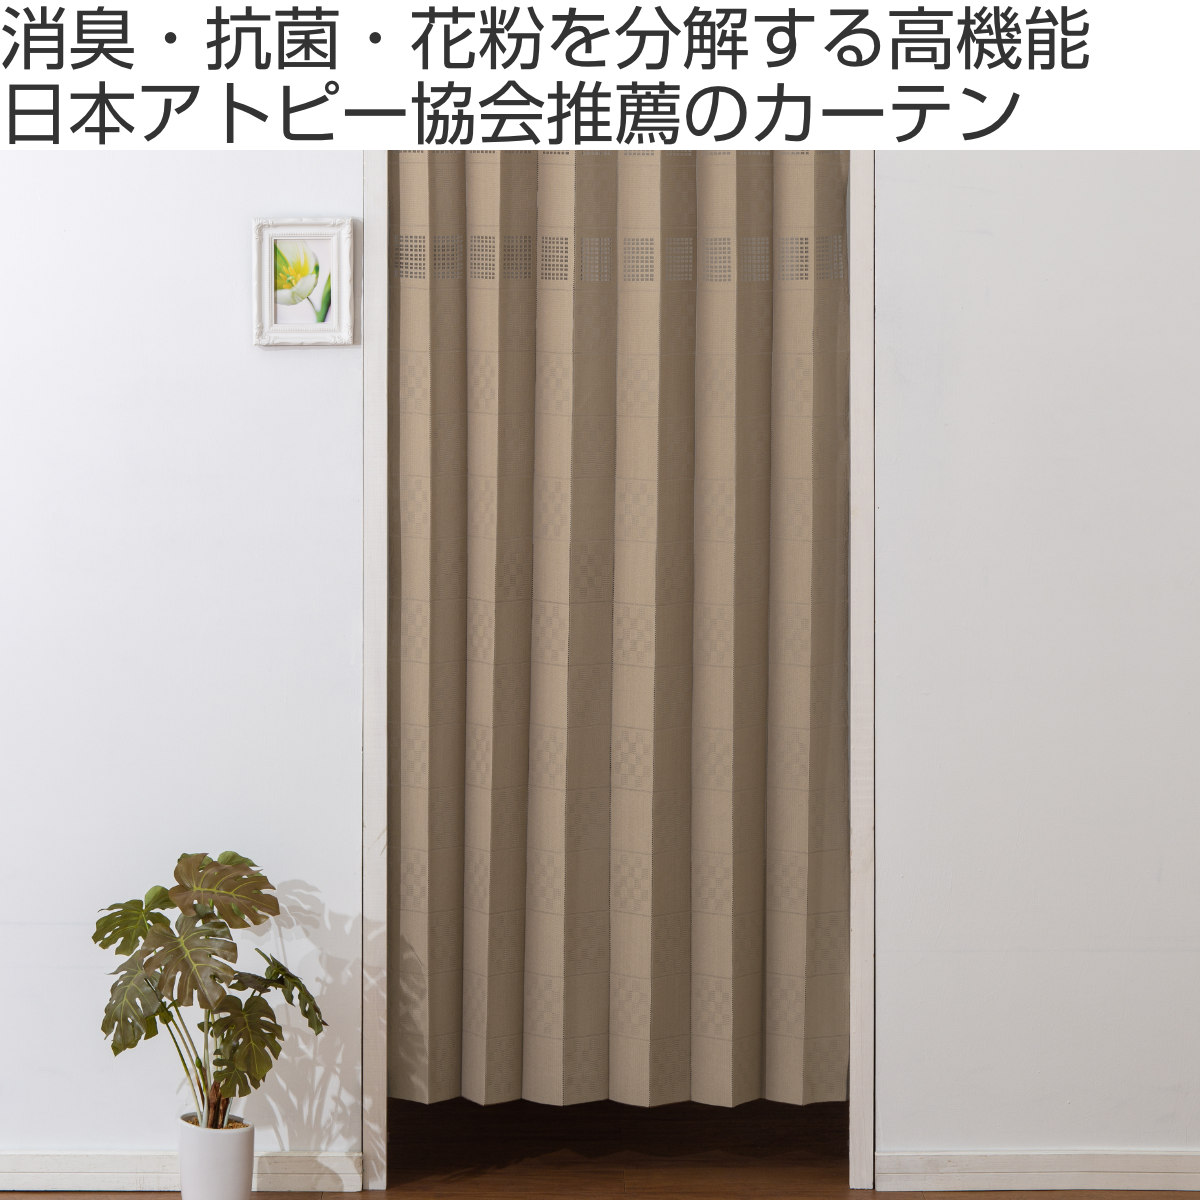 日本アトピー協会推薦品 フリーカットカーテン 幅100cm×丈250cm 1枚